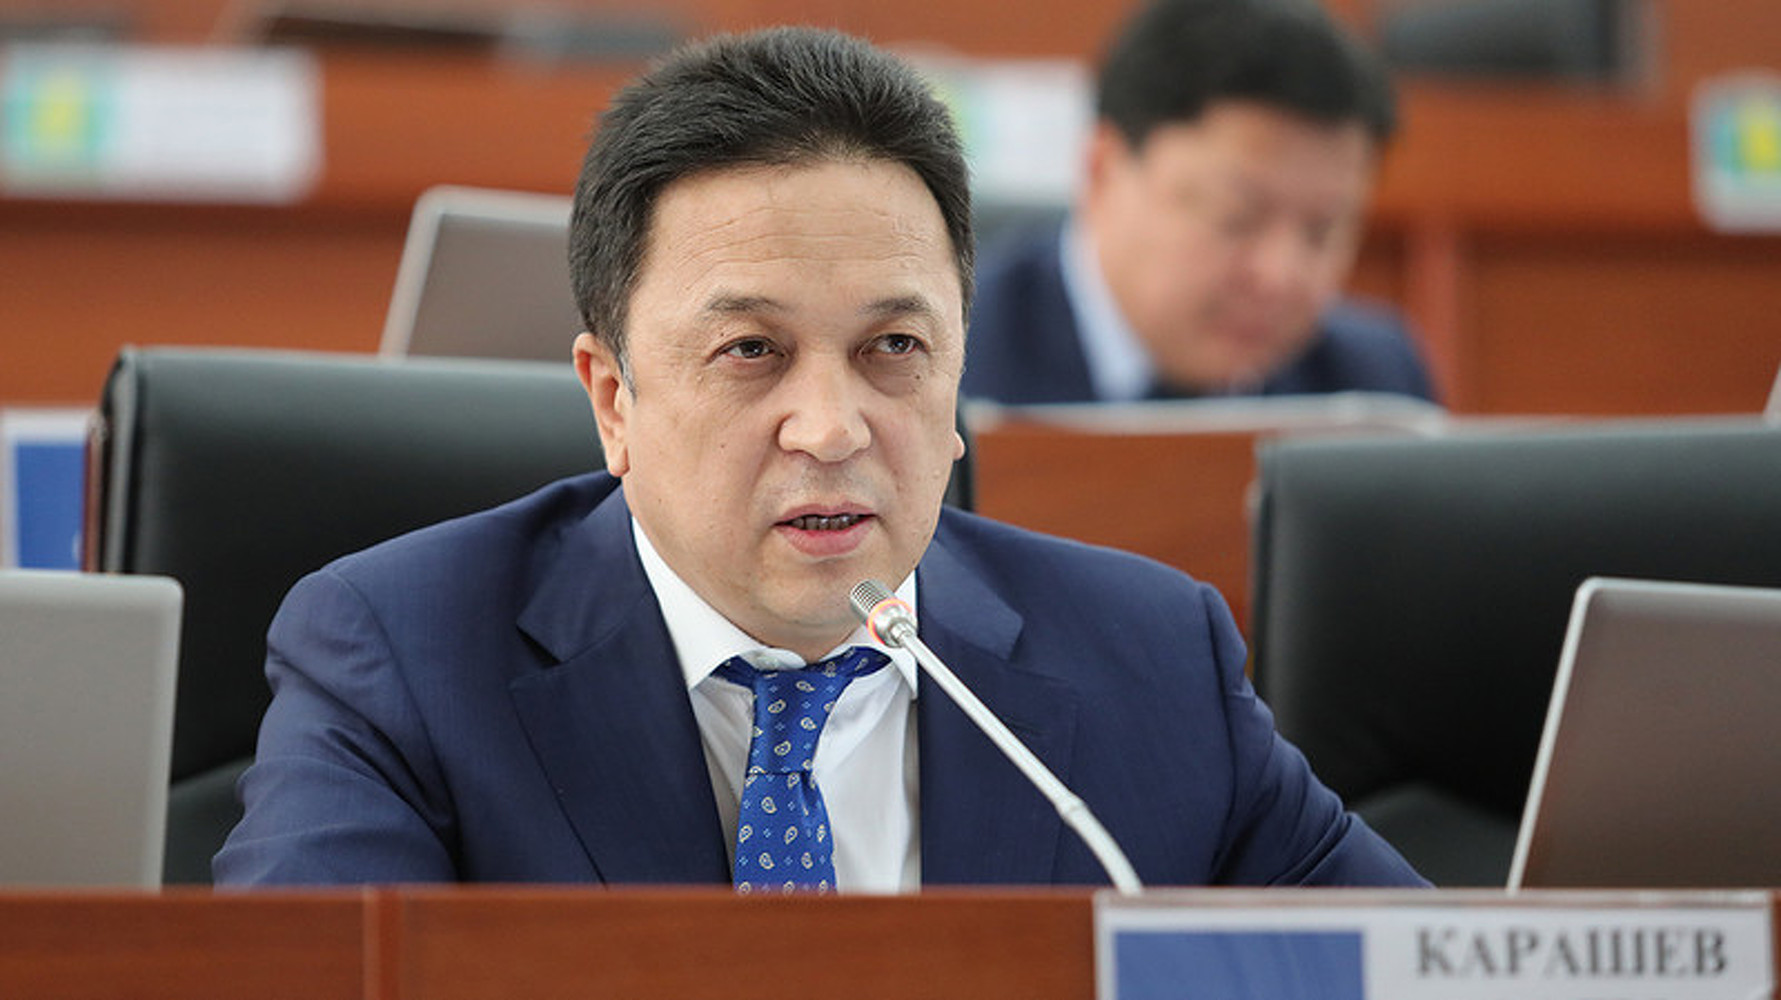 «Кыргыз почтасы» с 922 филиалами по всей стране оценили всего в 1 млрд сомов или $15 млн, - депутат — Today.kg